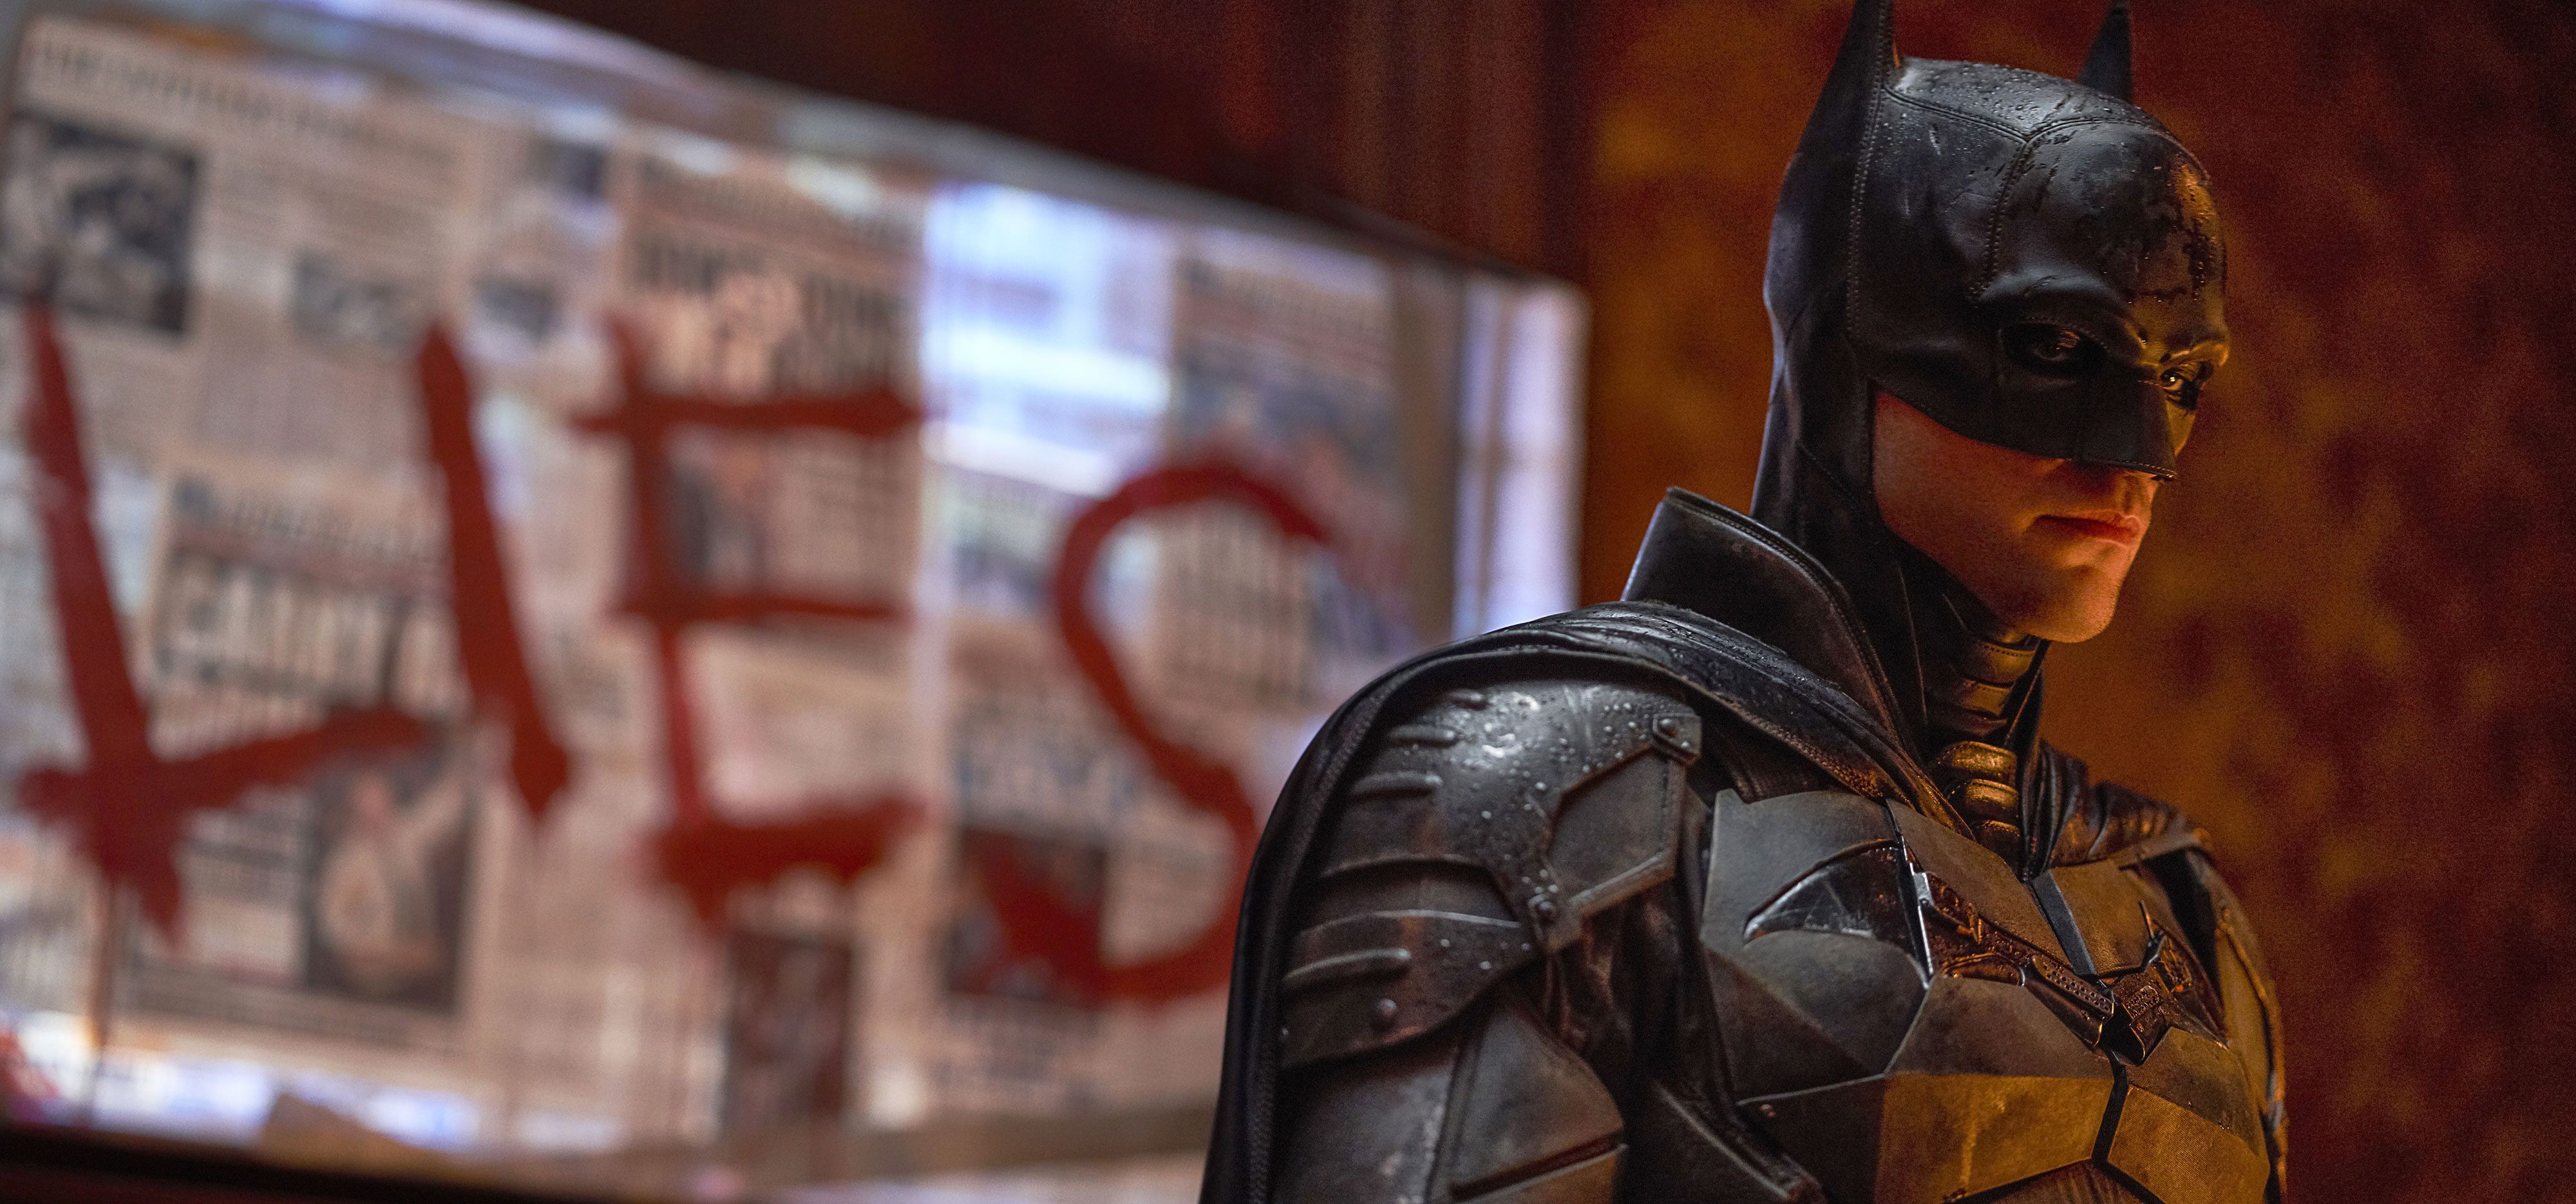 Let's post our favorite Batman wallpapers! : r/batman